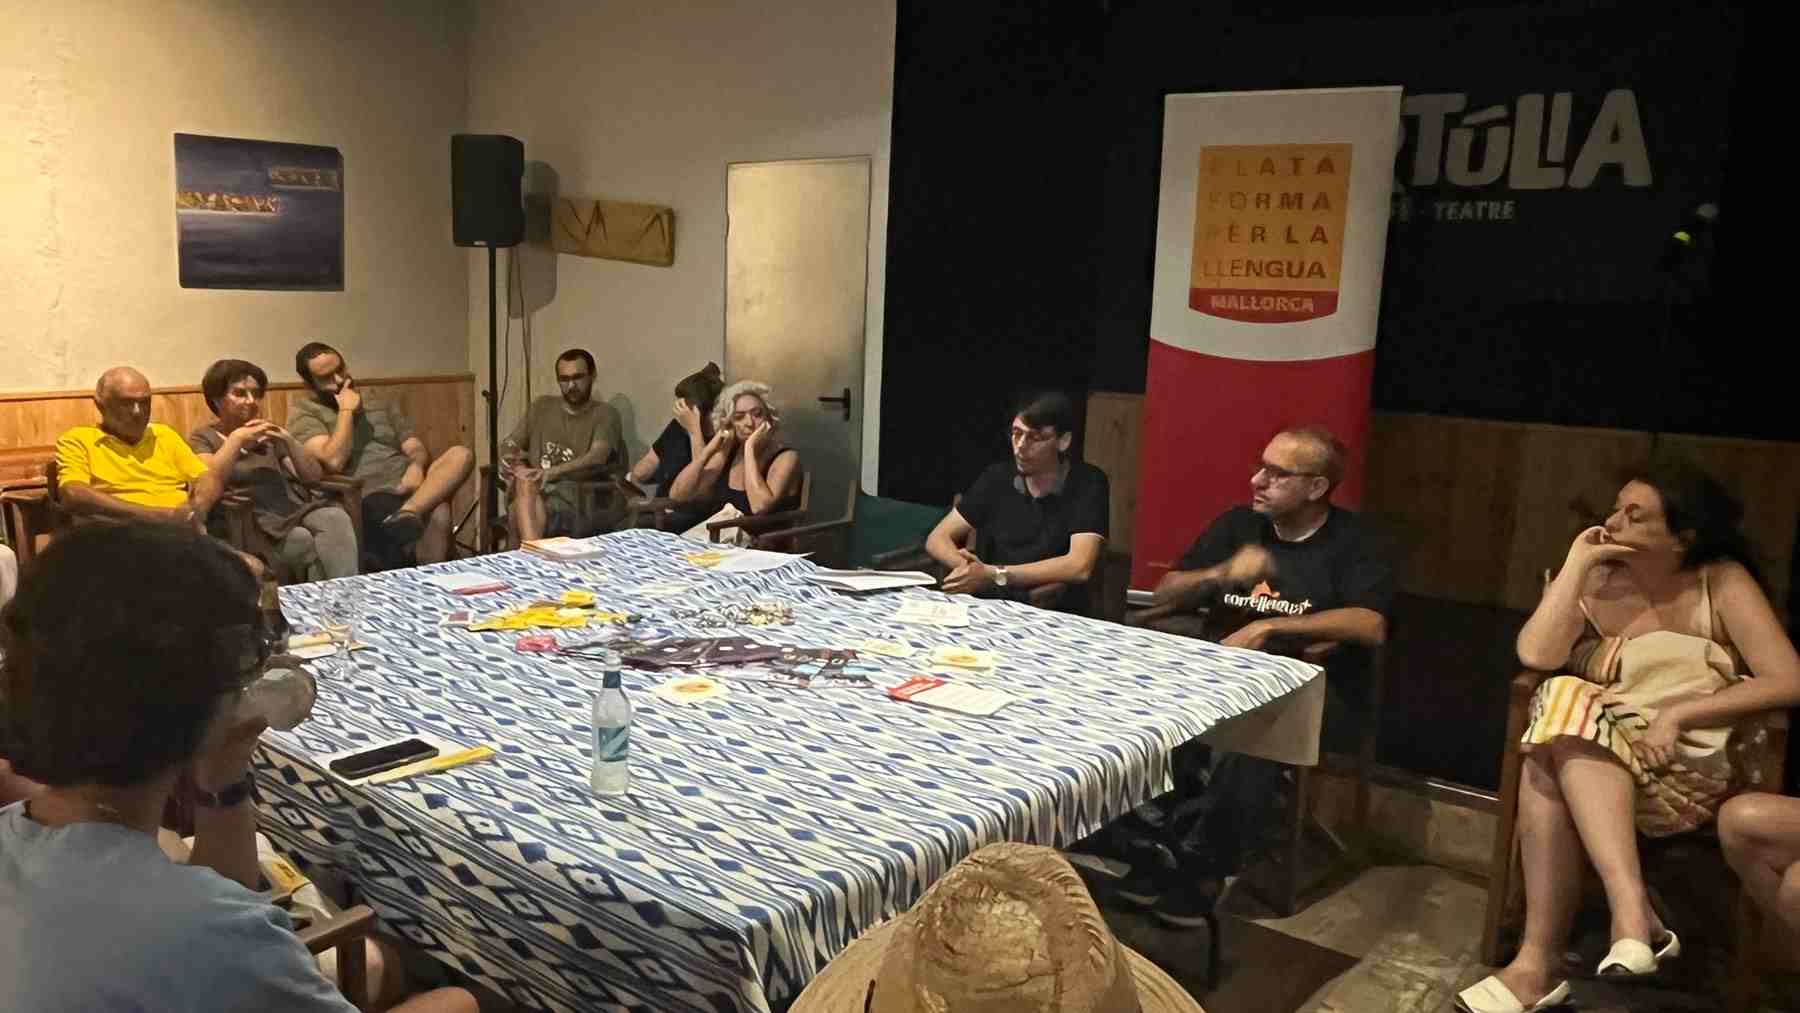 Reunión de activistas de la delegación en Mallorca de la ‘Plataforma per la Llengua’.